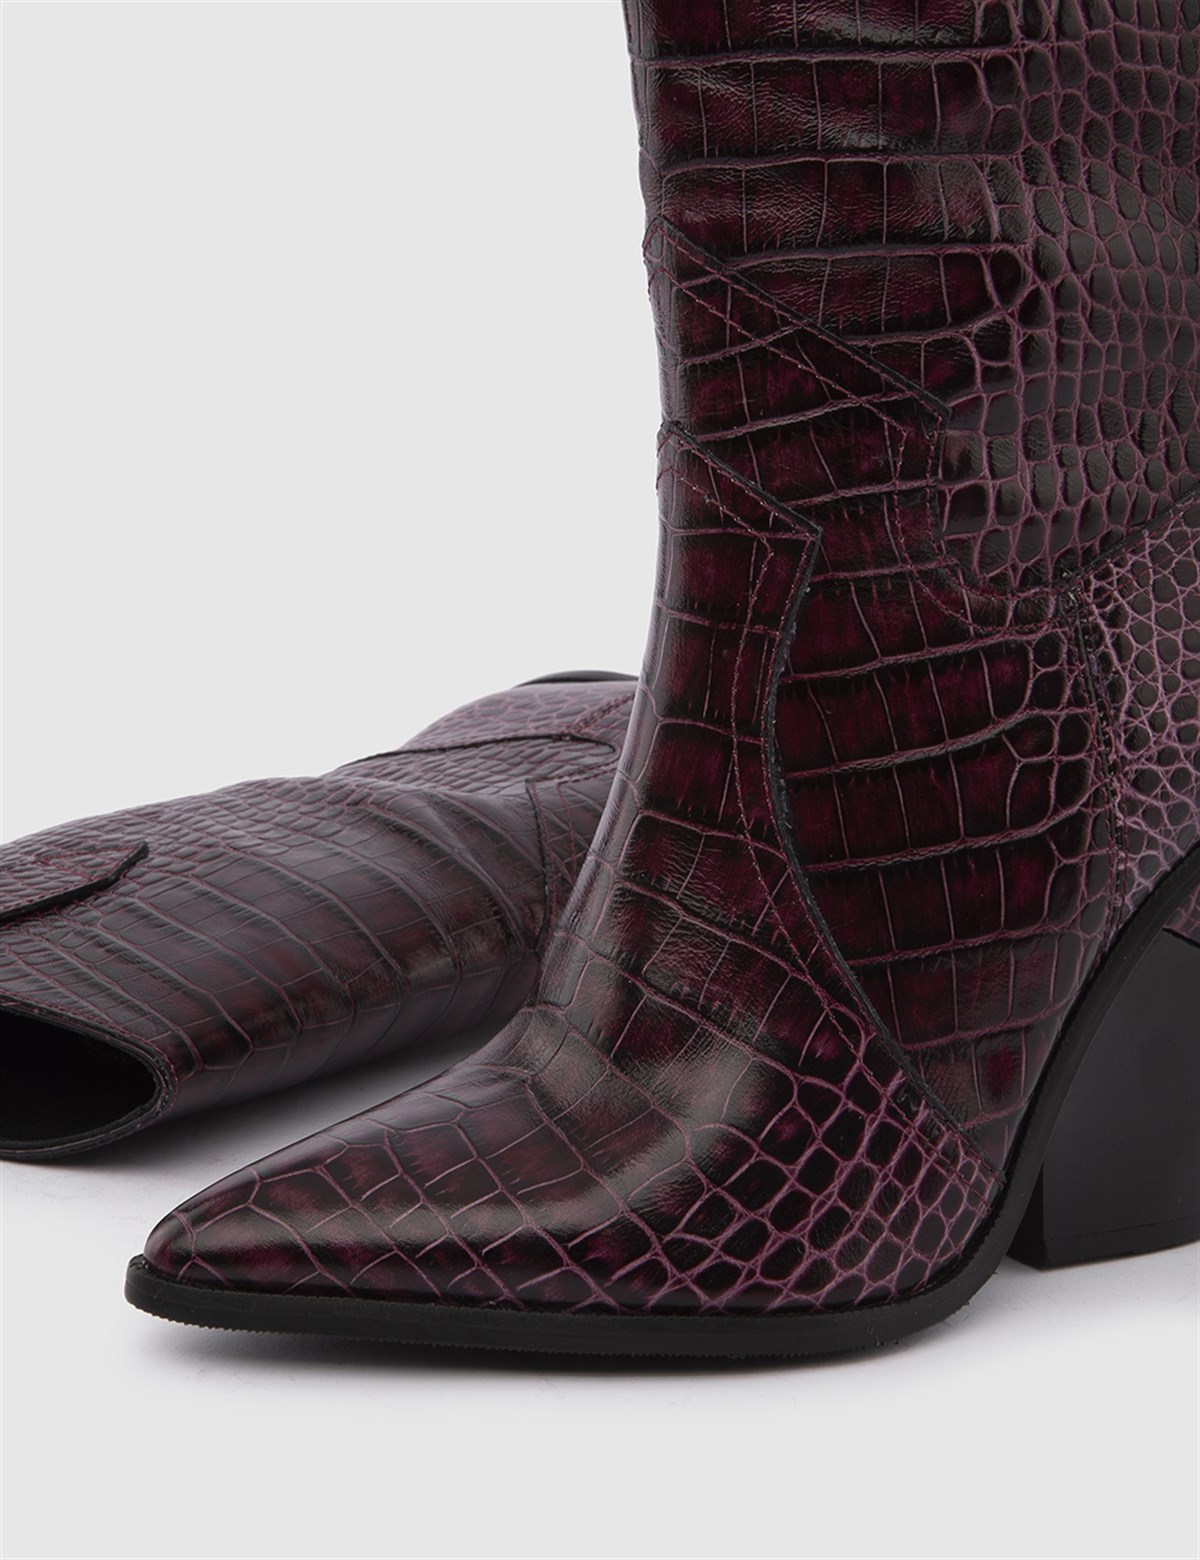 Misha Burgundy Crocodile Leather Women's Heeled Boot - İLVİ